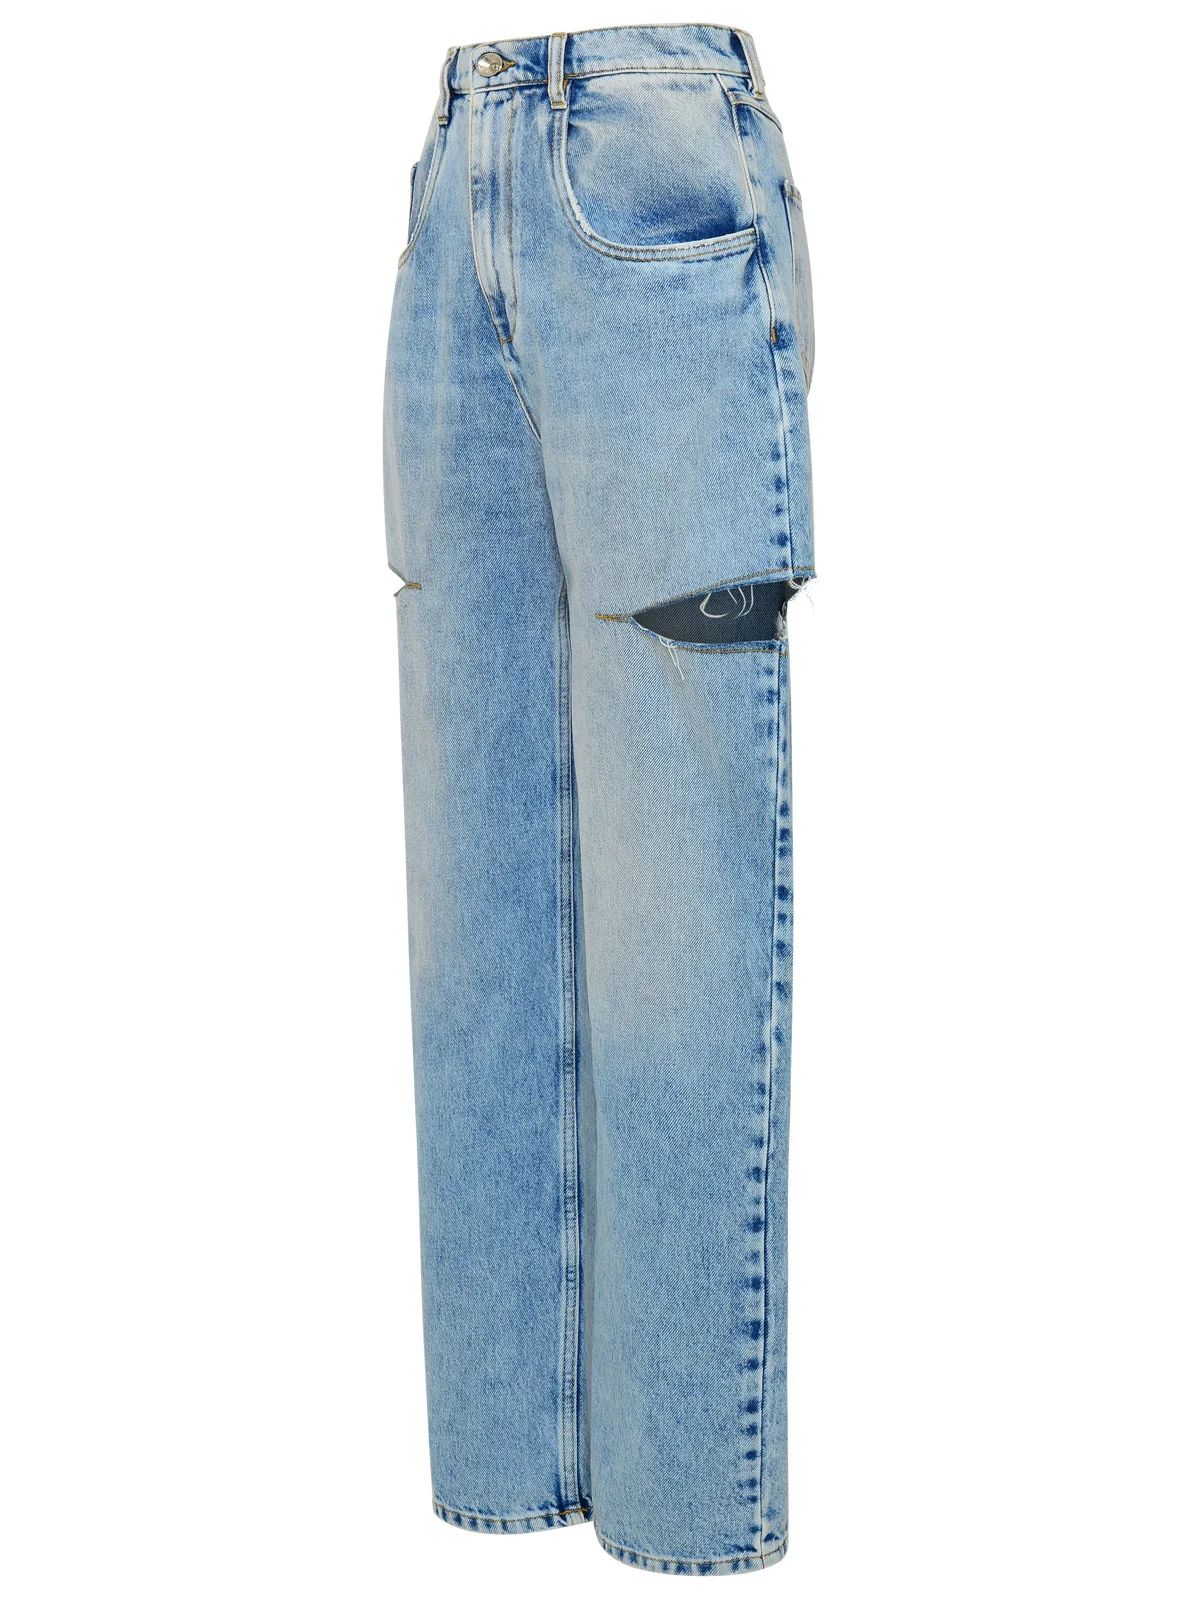 Maison Margiela Cut-Out Detailed Jeans | Cettire Global